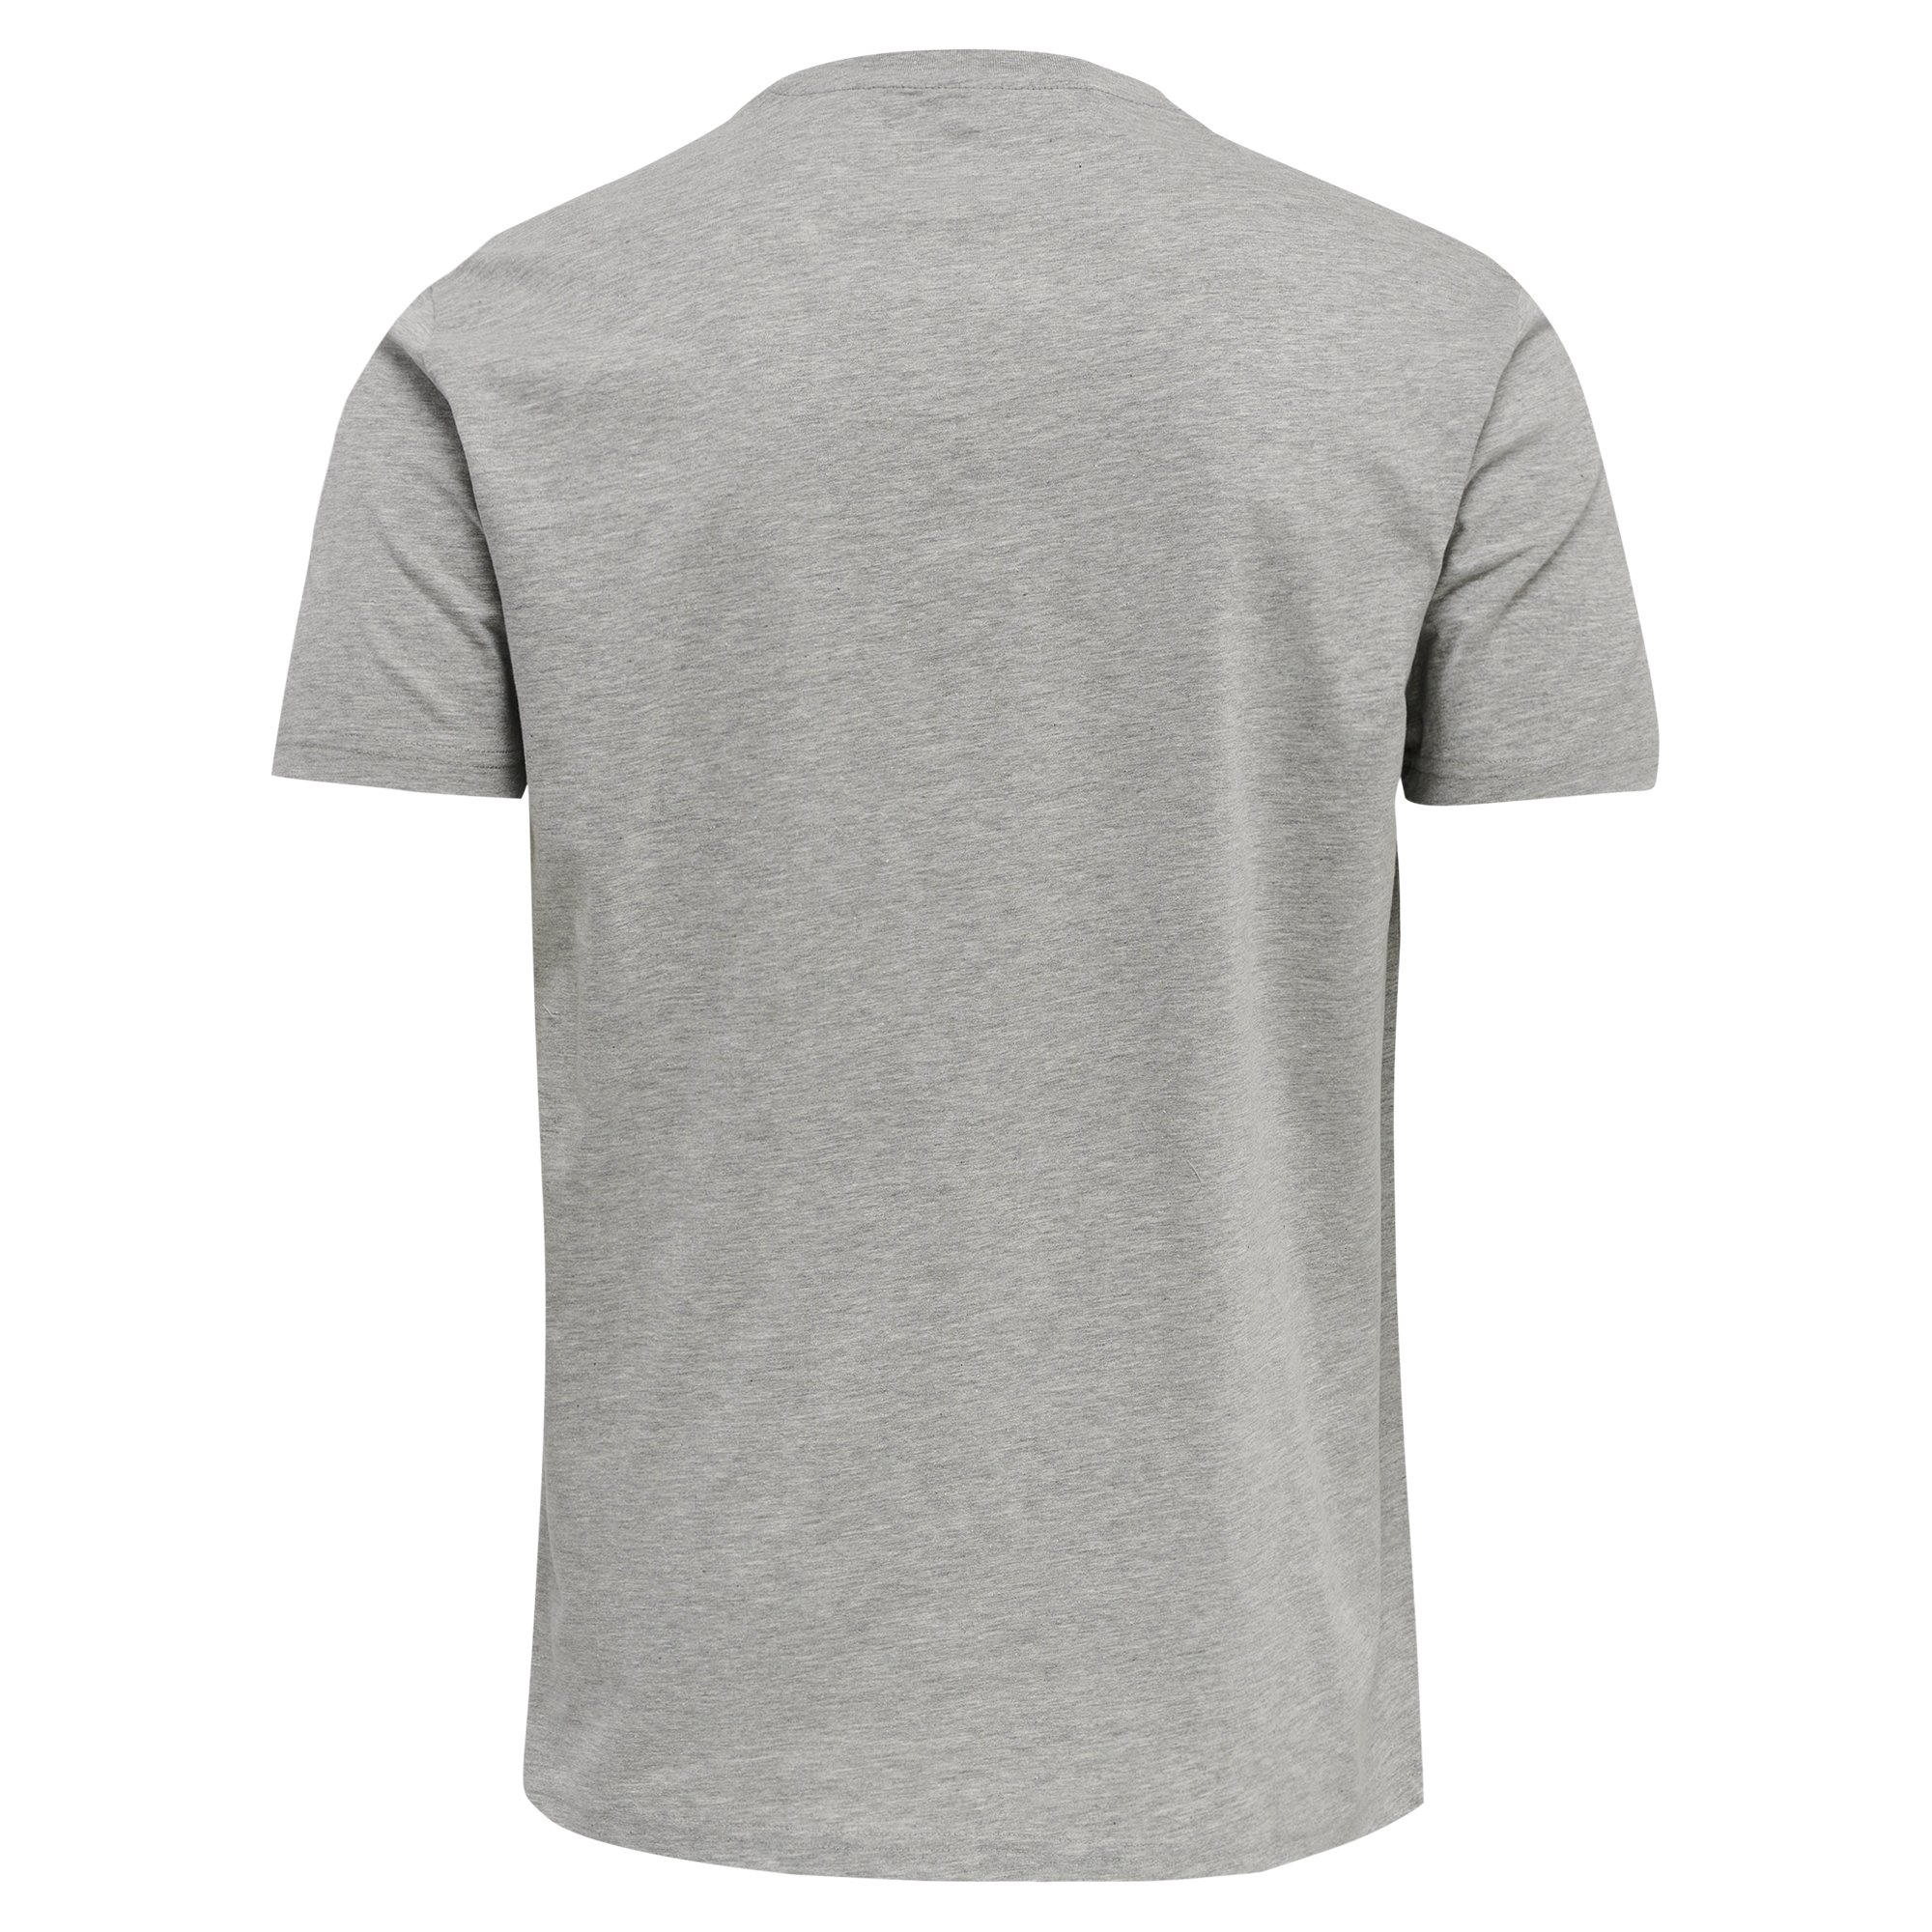 Hummel GG12 T-Shirt